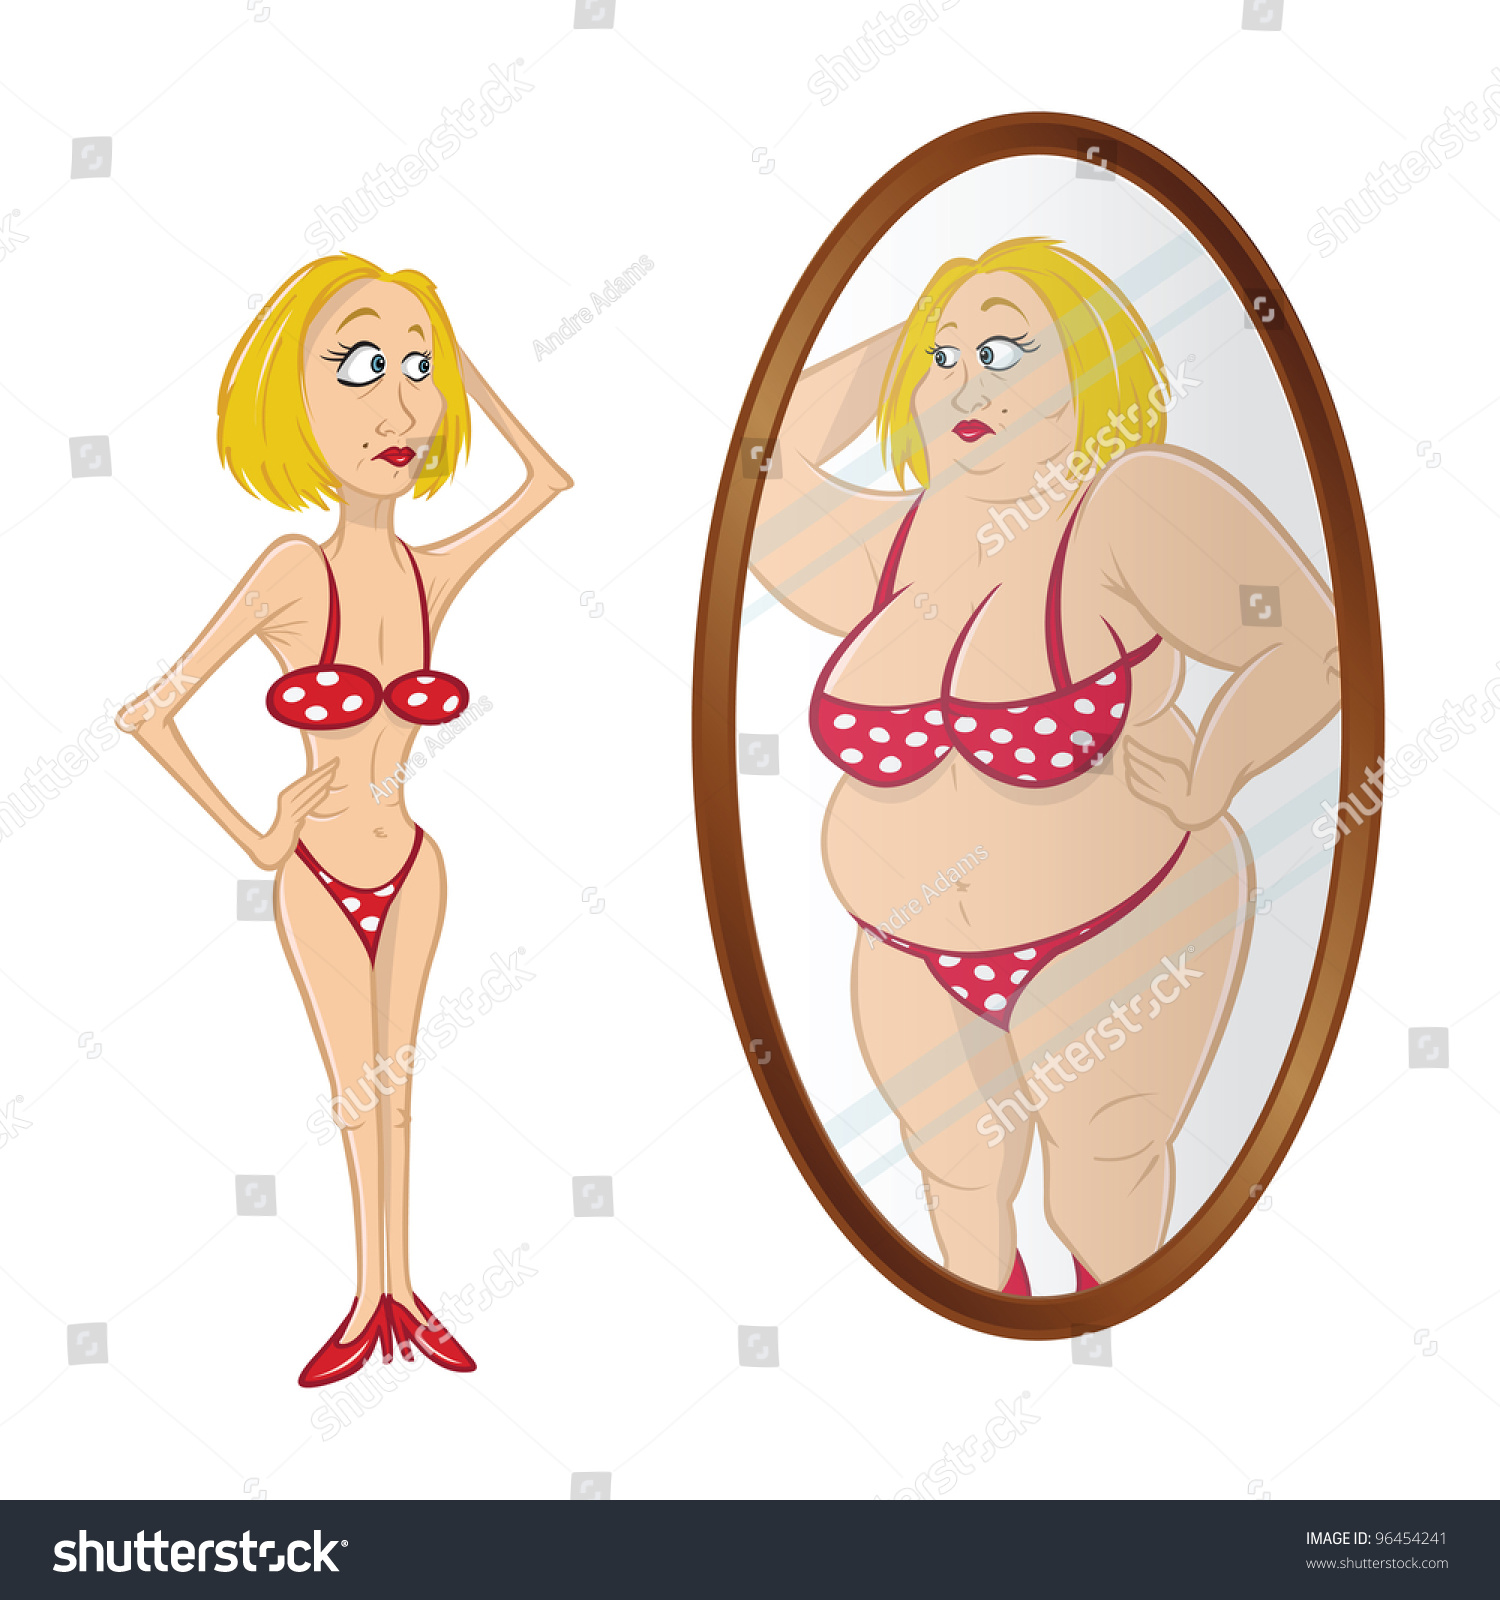 Anorexia, cartoon